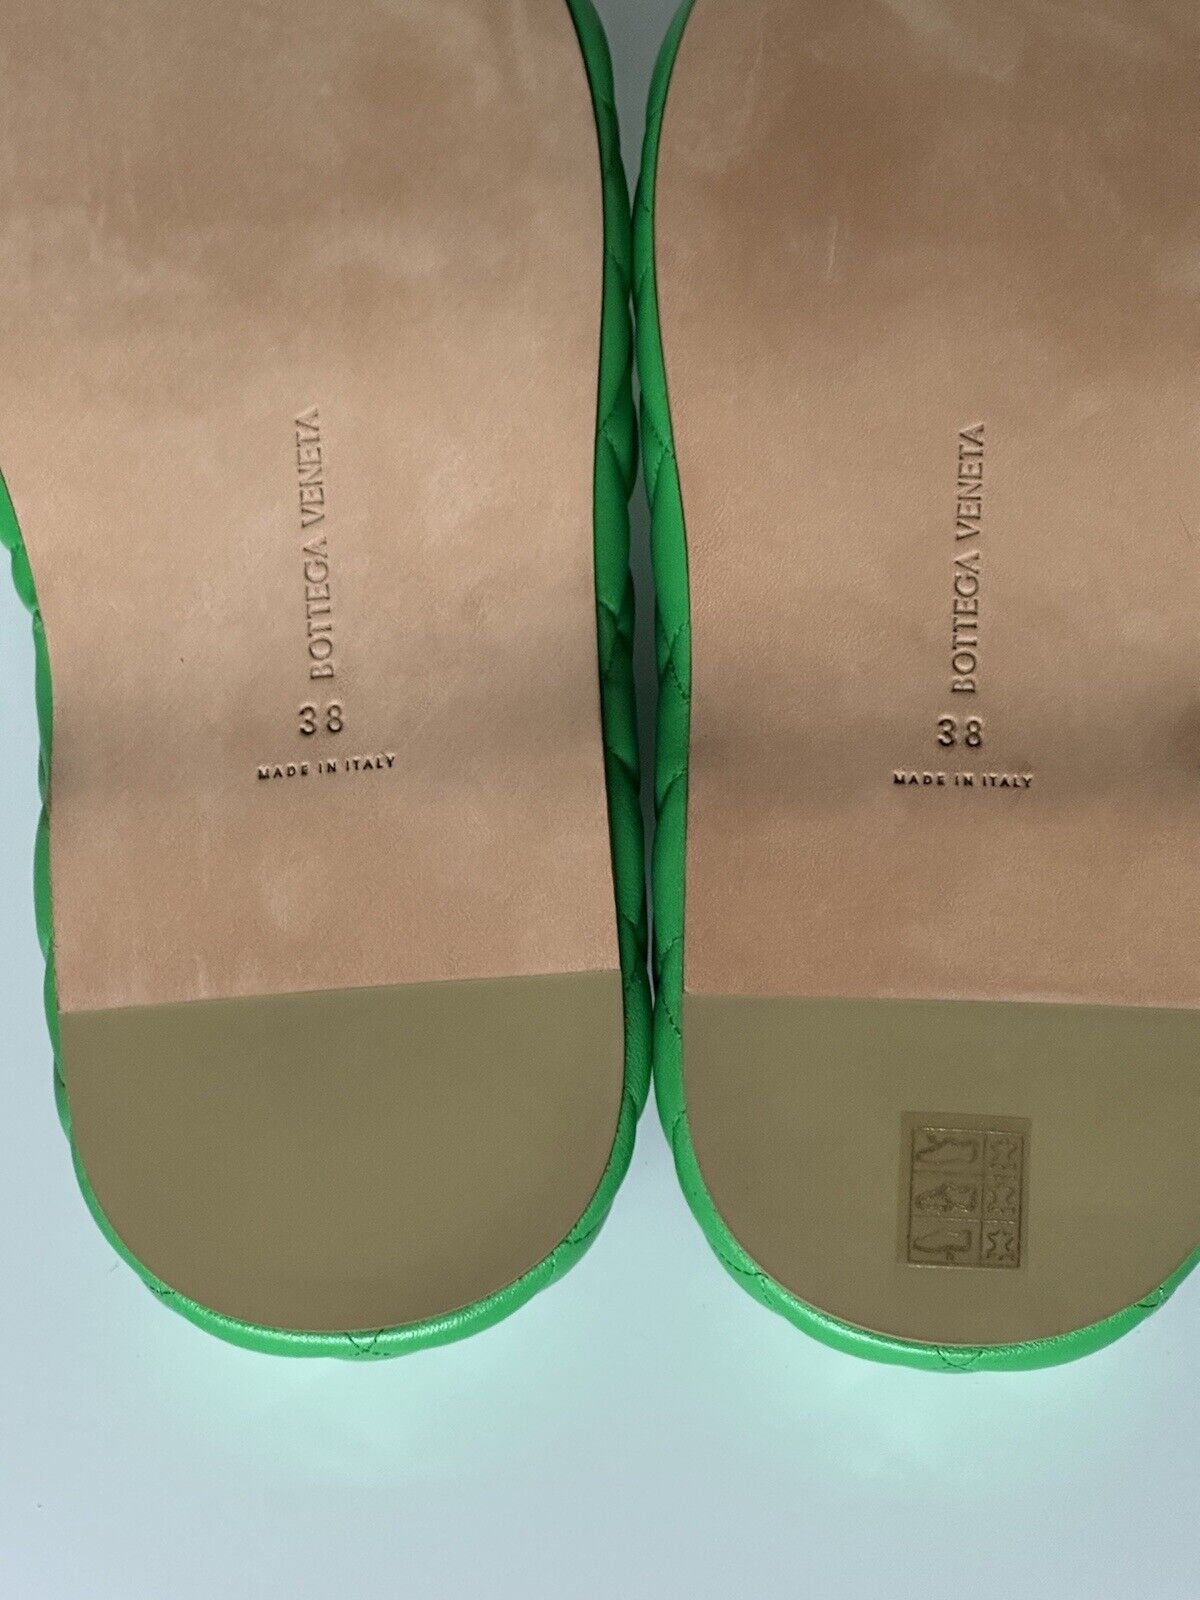 NIB Зеленые кожаные стеганые сандалии Bottega Veneta за 1450 долларов США 8 США 708885 IT 